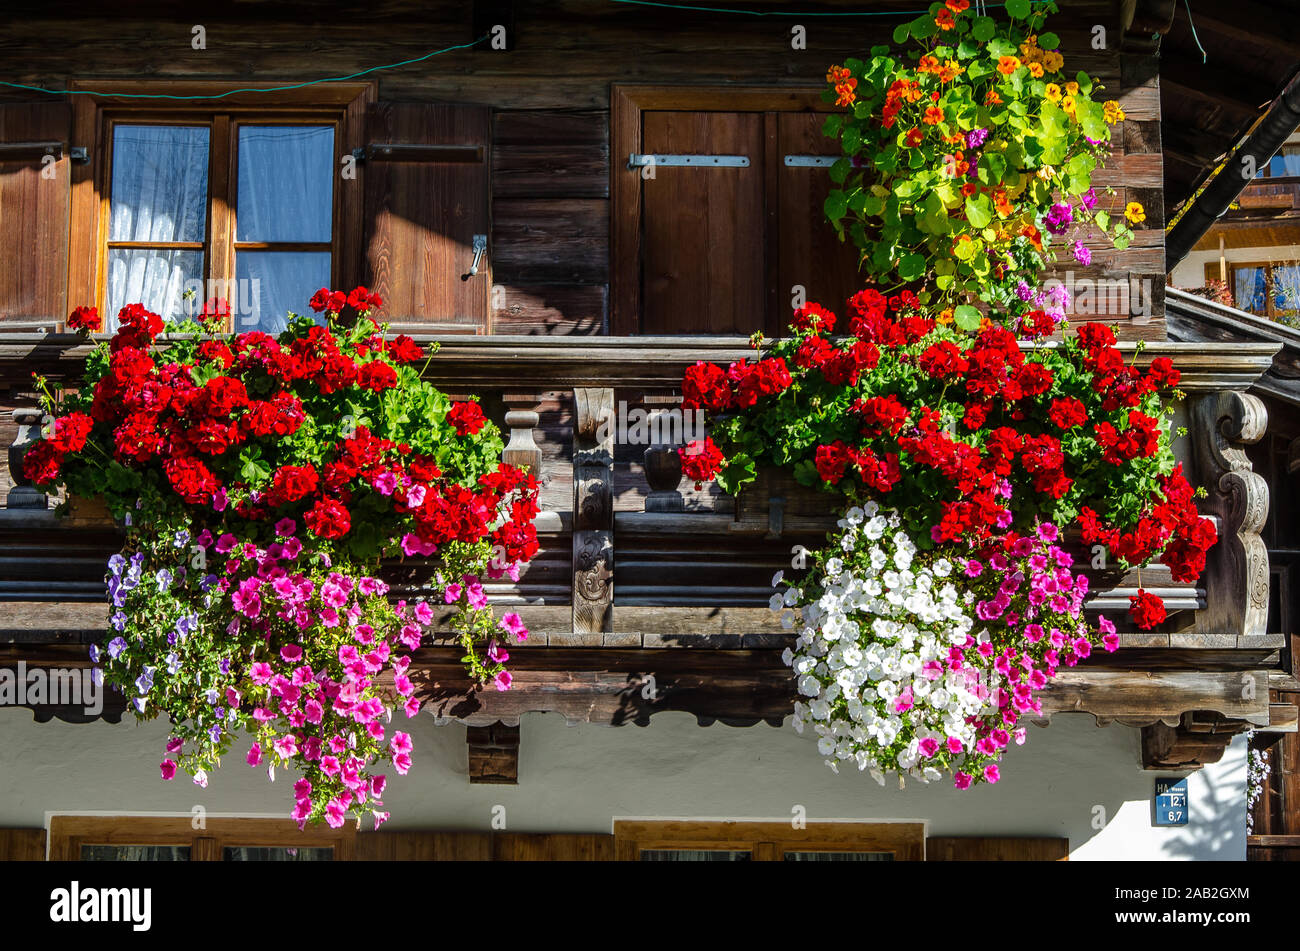 Blumenbalkone Stockfotos und -bilder Kaufen - Alamy